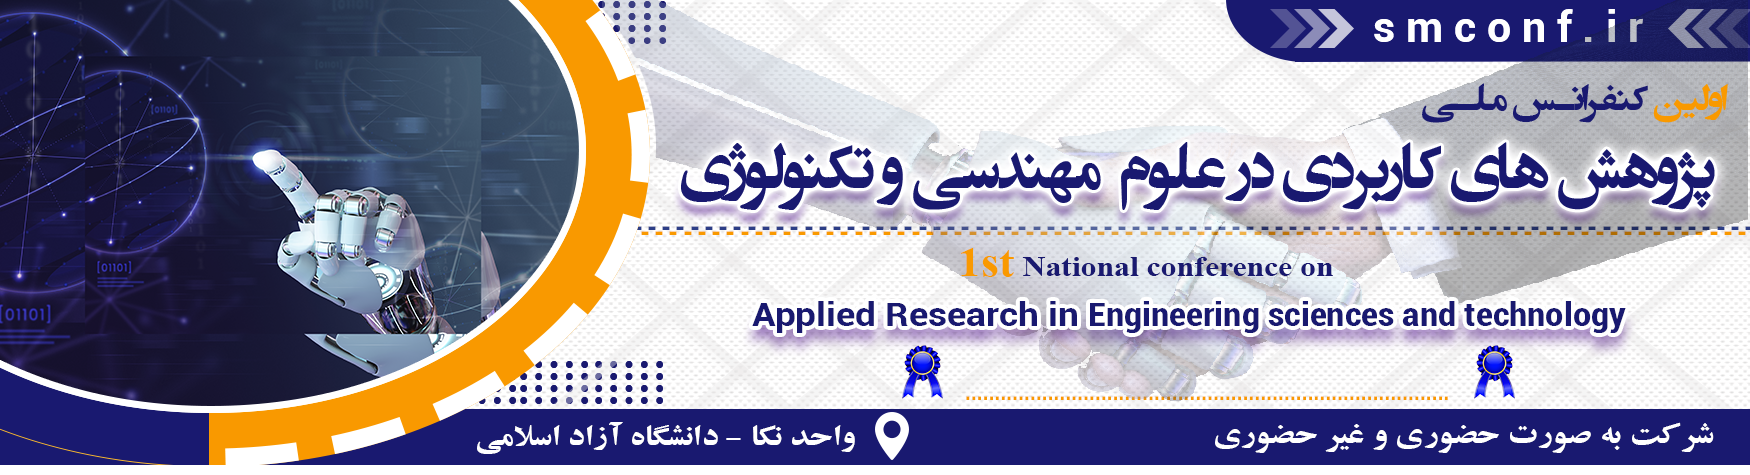 کنفرانس ملی پژوهش های کاربردی در علوم مهندسی و تکنولوژی